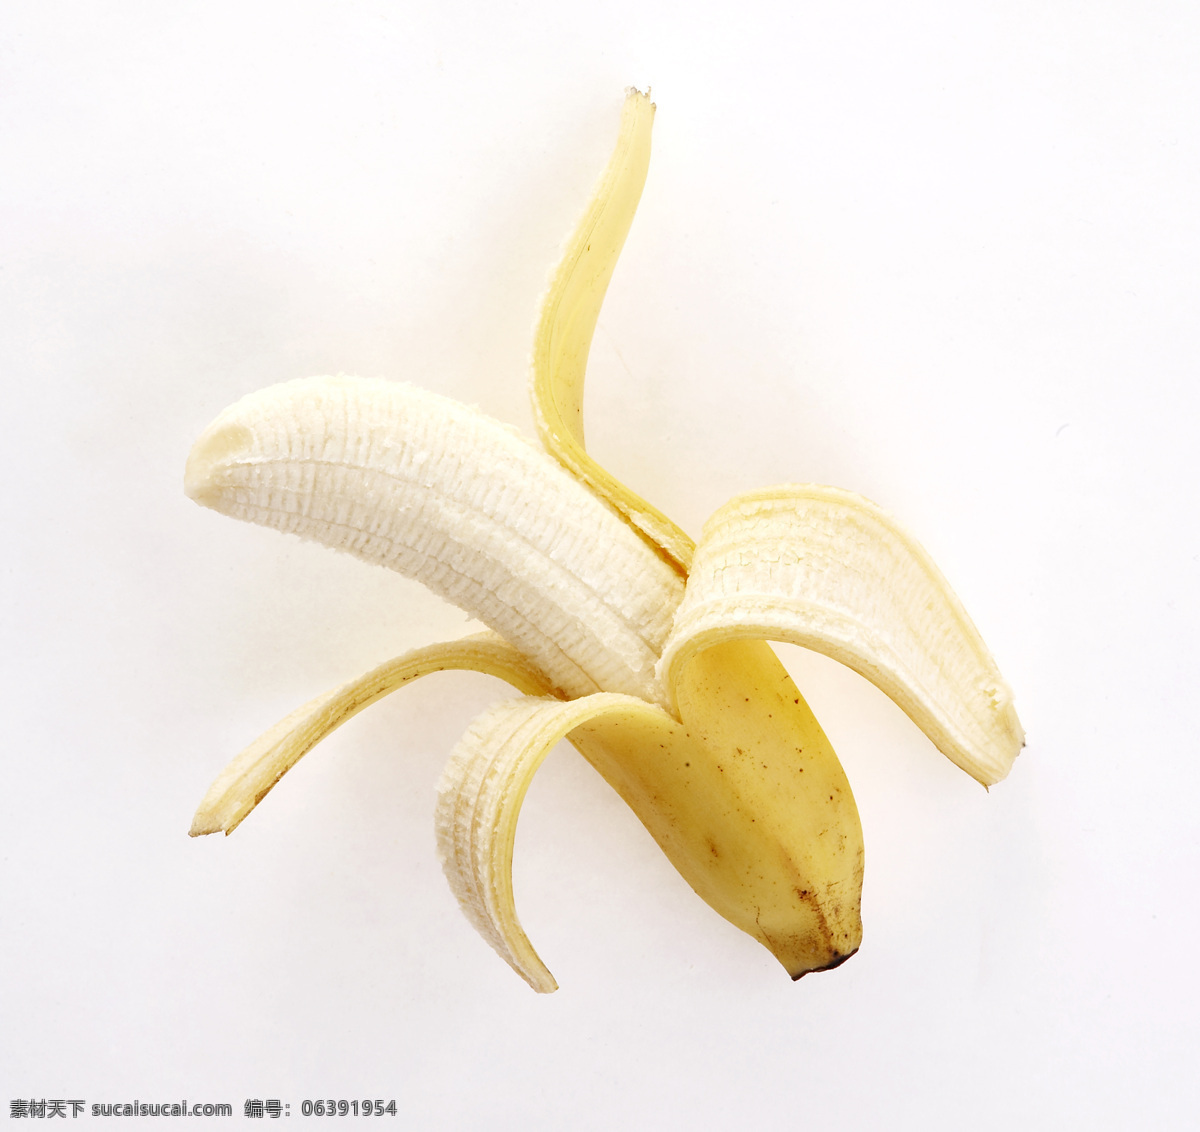 香蕉 剥香蕉 香蕉皮 菲律宾香蕉 海南香蕉 甜香蕉 香蕉果肉 进口香蕉 水果 生物世界